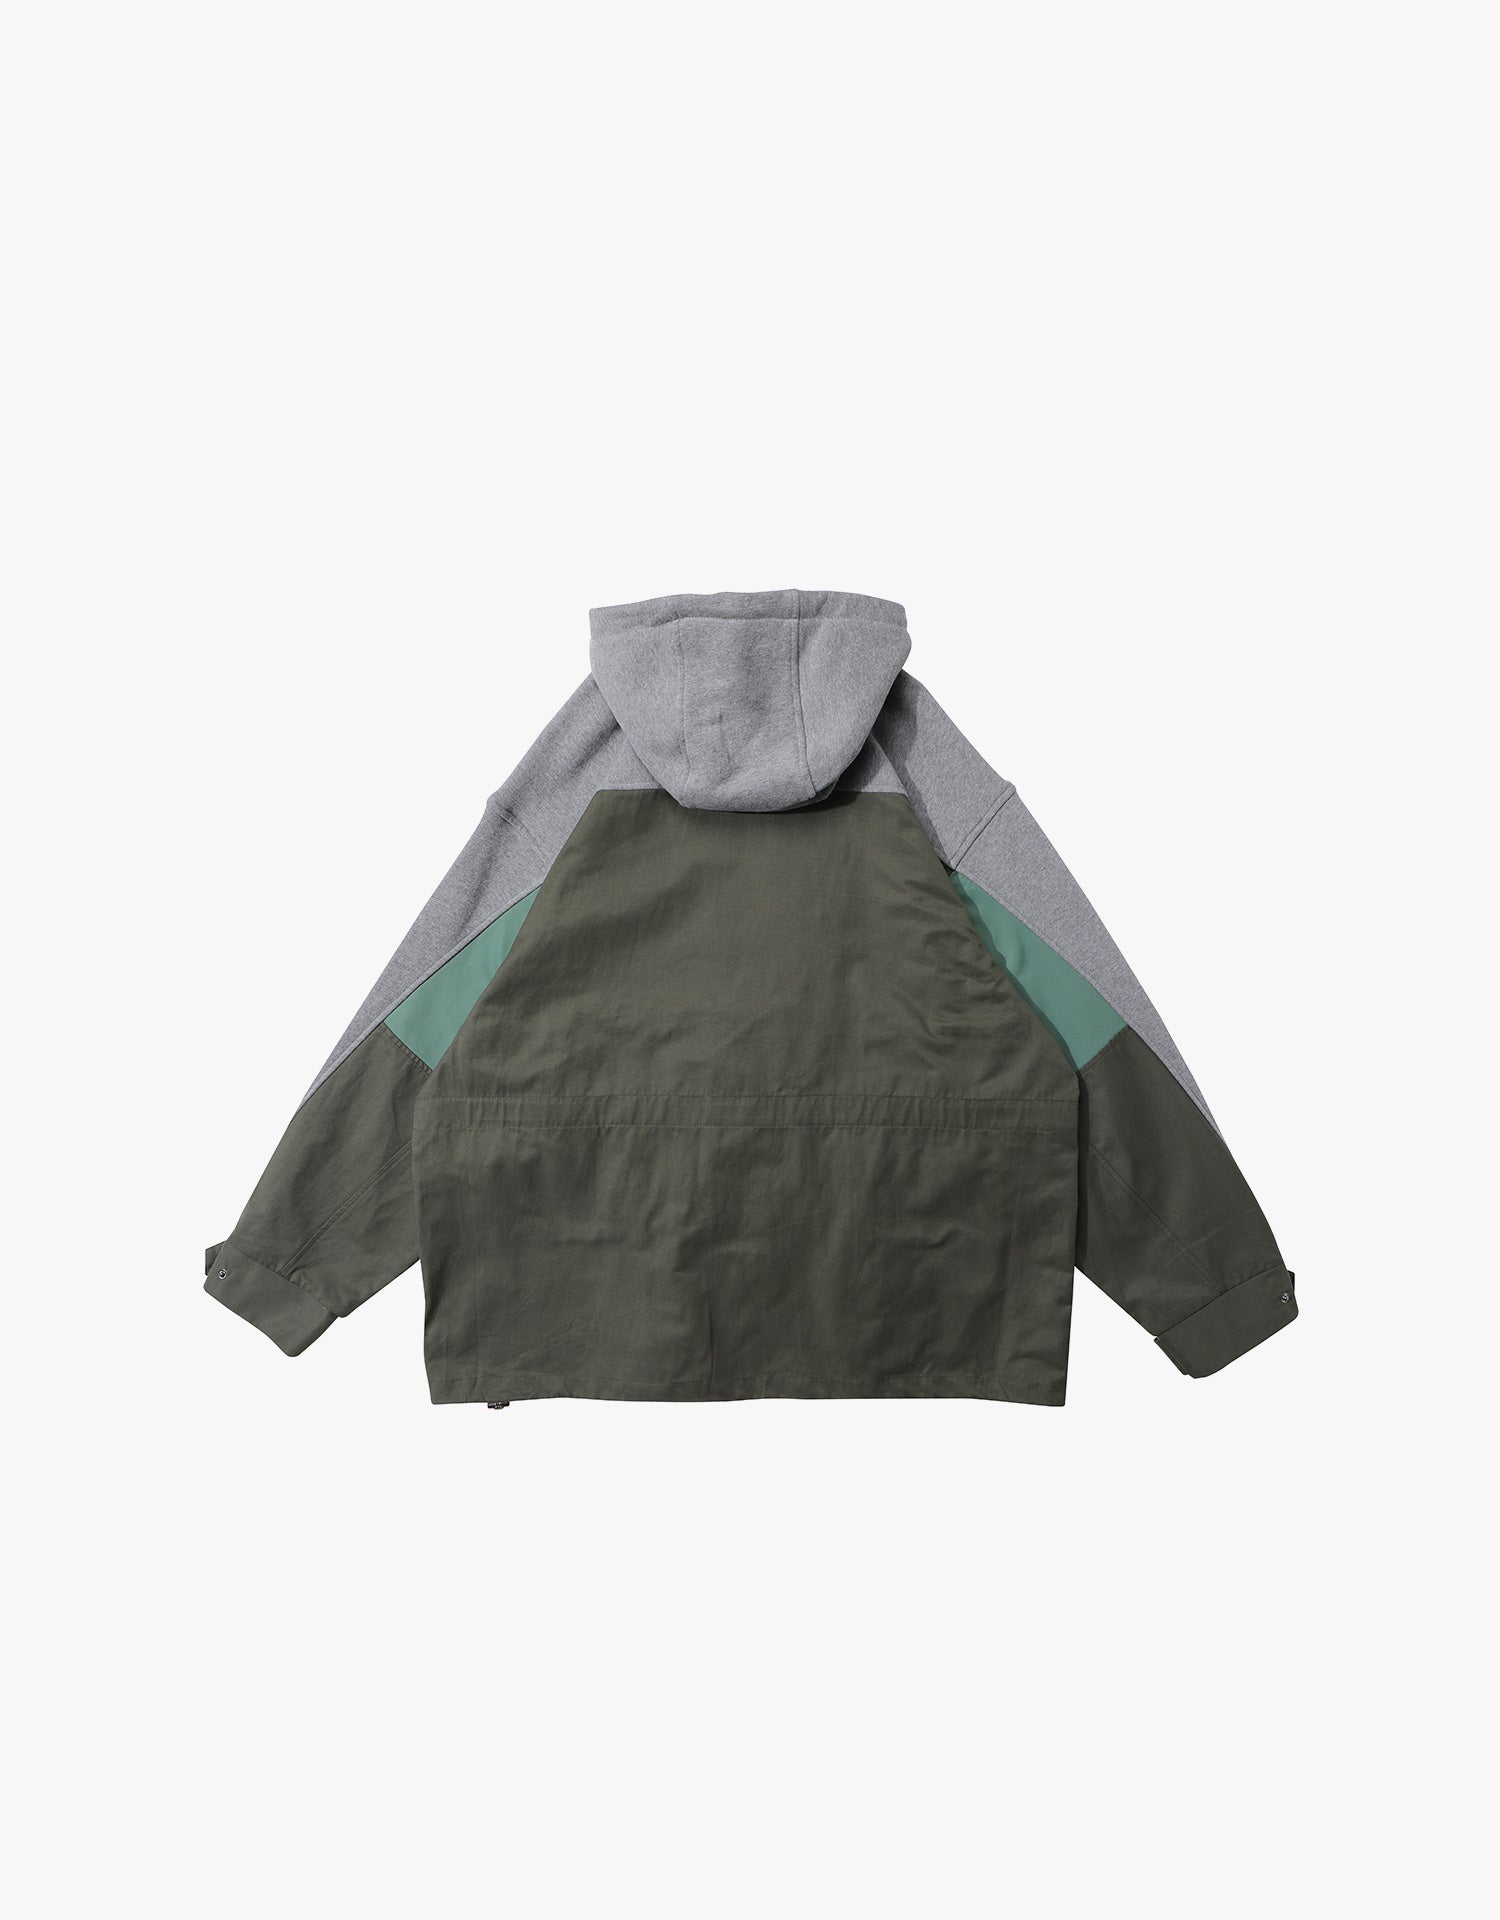 TopBasics Cargo Pocket Zip Up Hooded Jacket